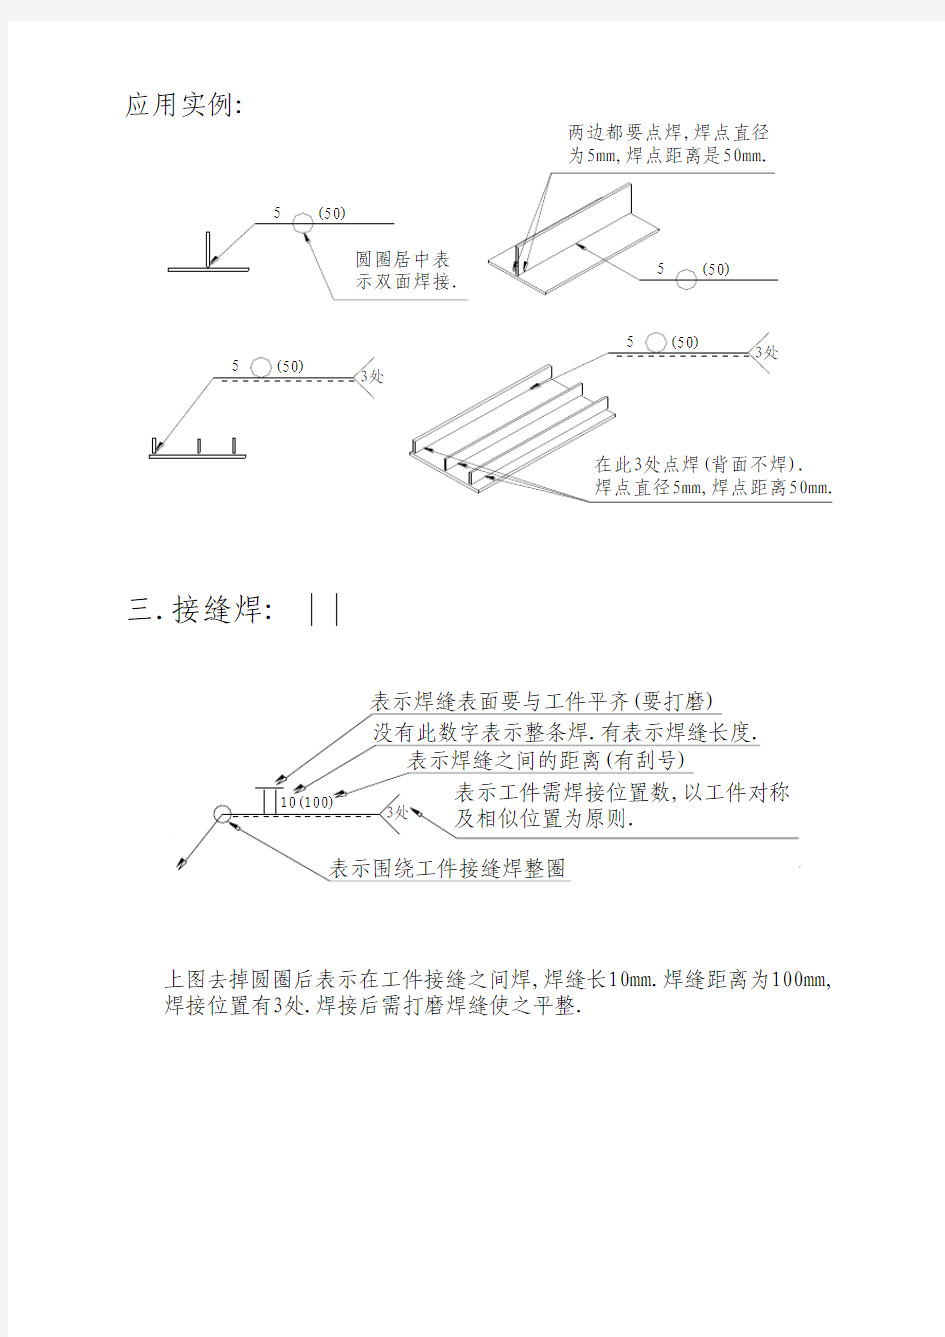 焊接工艺符号规范说明